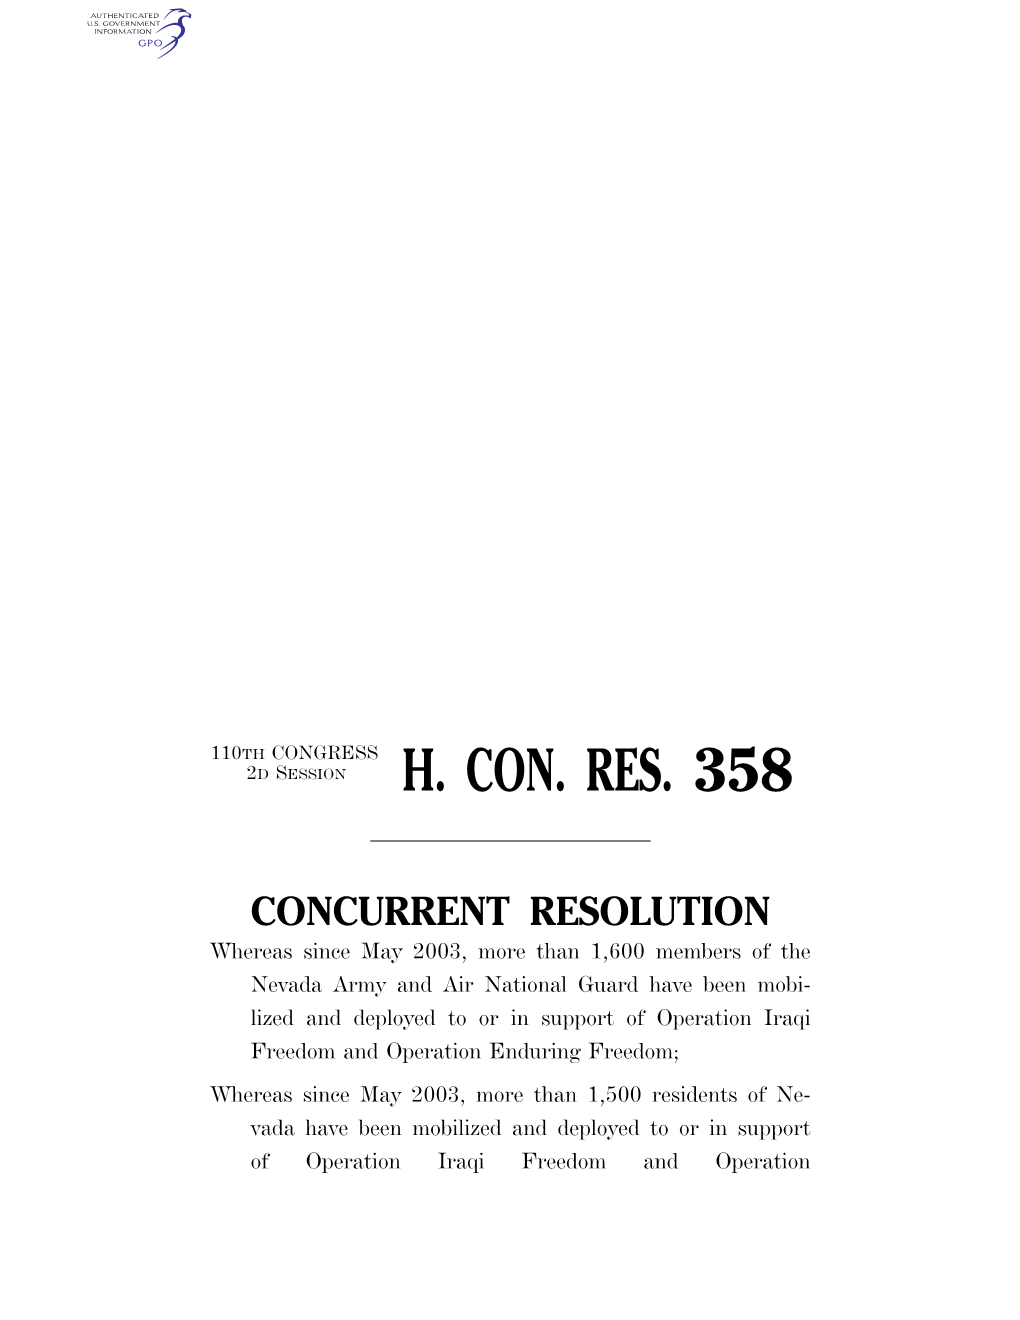 H. Con. Res. 358